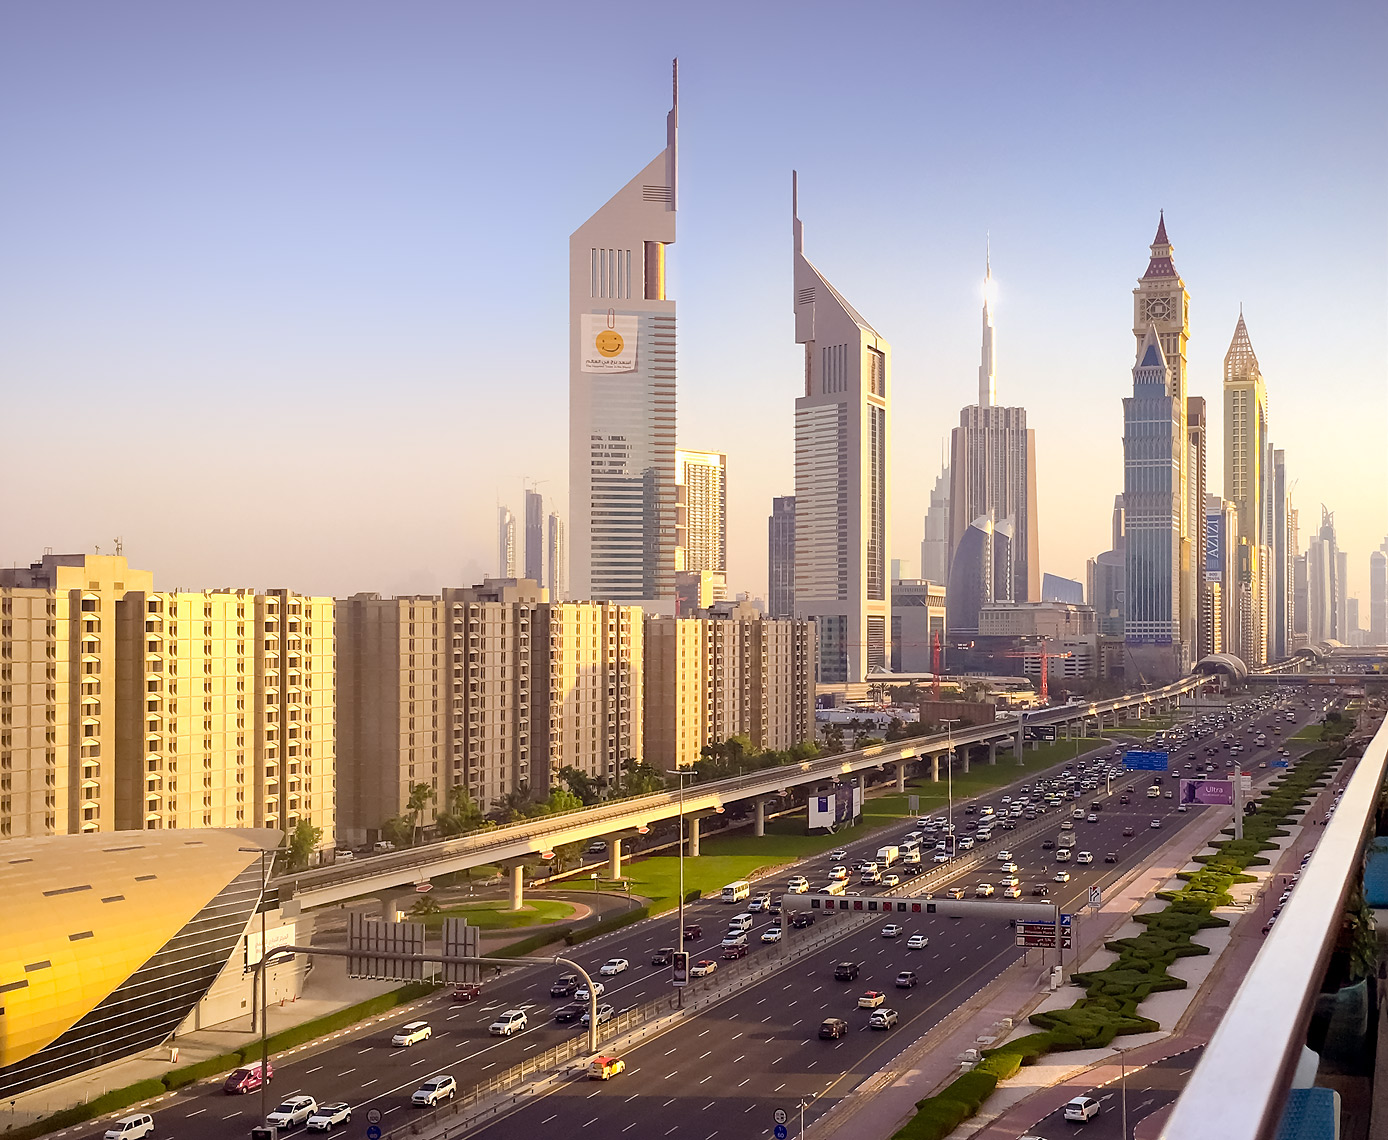 Dubai, UAE - skyline as seen from Fairmont Dubai Hotel